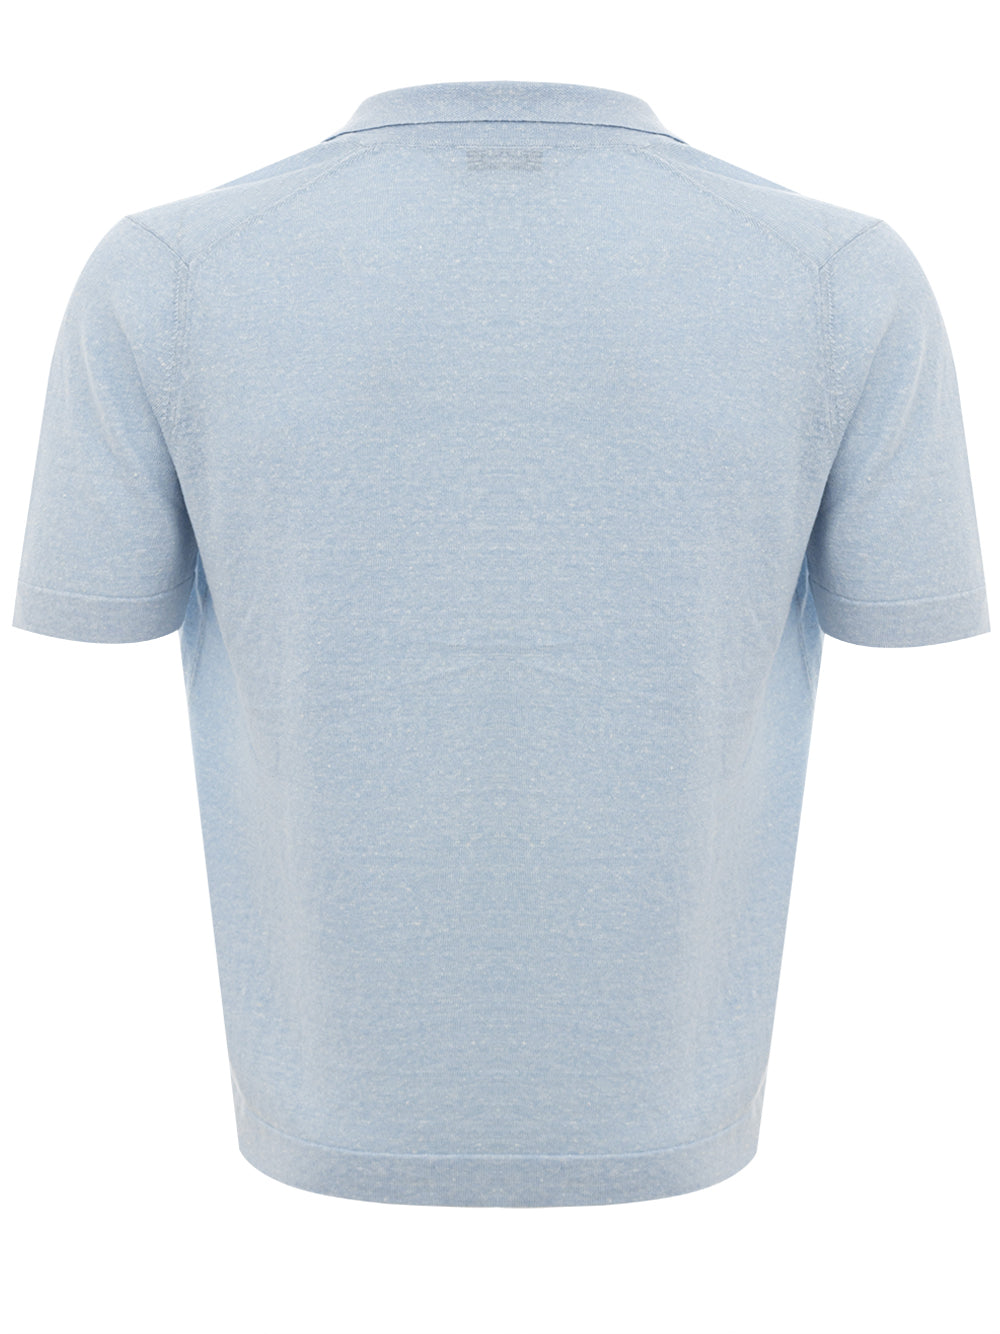 Gran Sasso Light Blue Linen Blend Half Sleeve Shirt